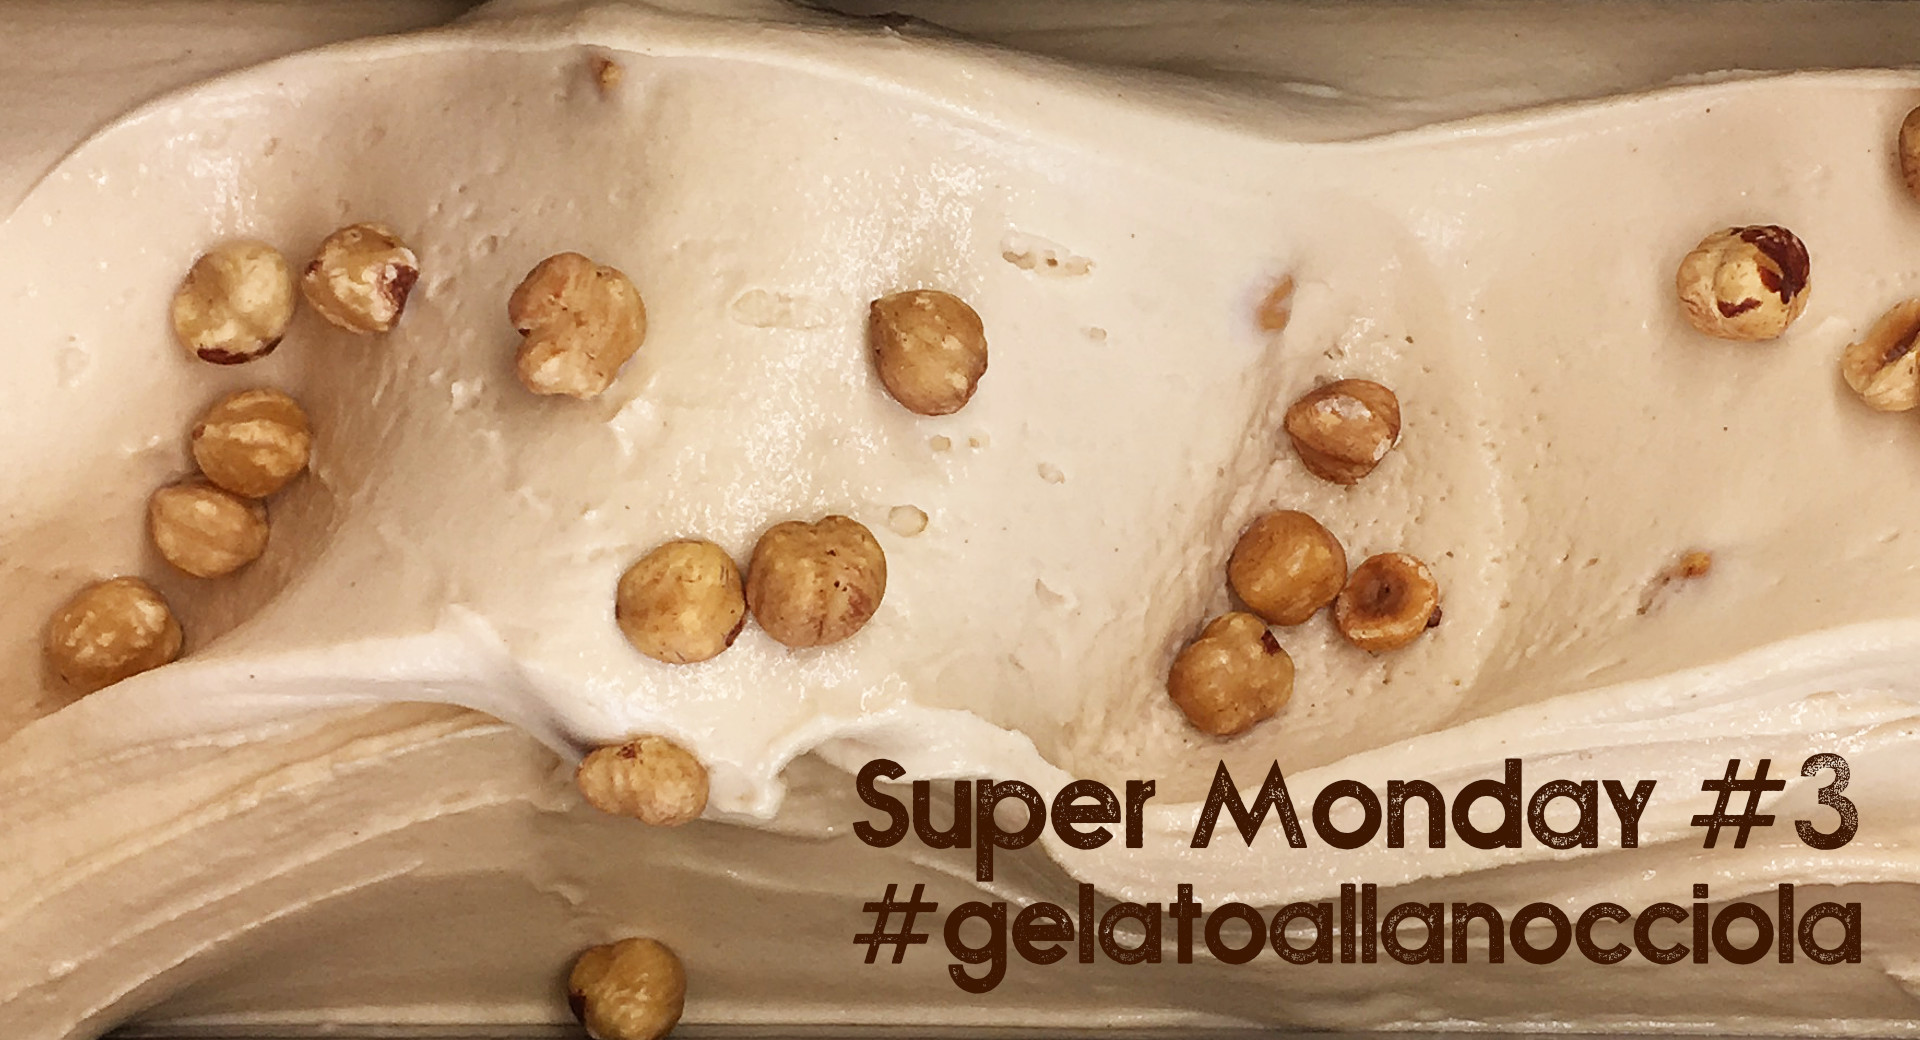 Gelq.it - Super Monday #3 - Gelato alla Nocciola